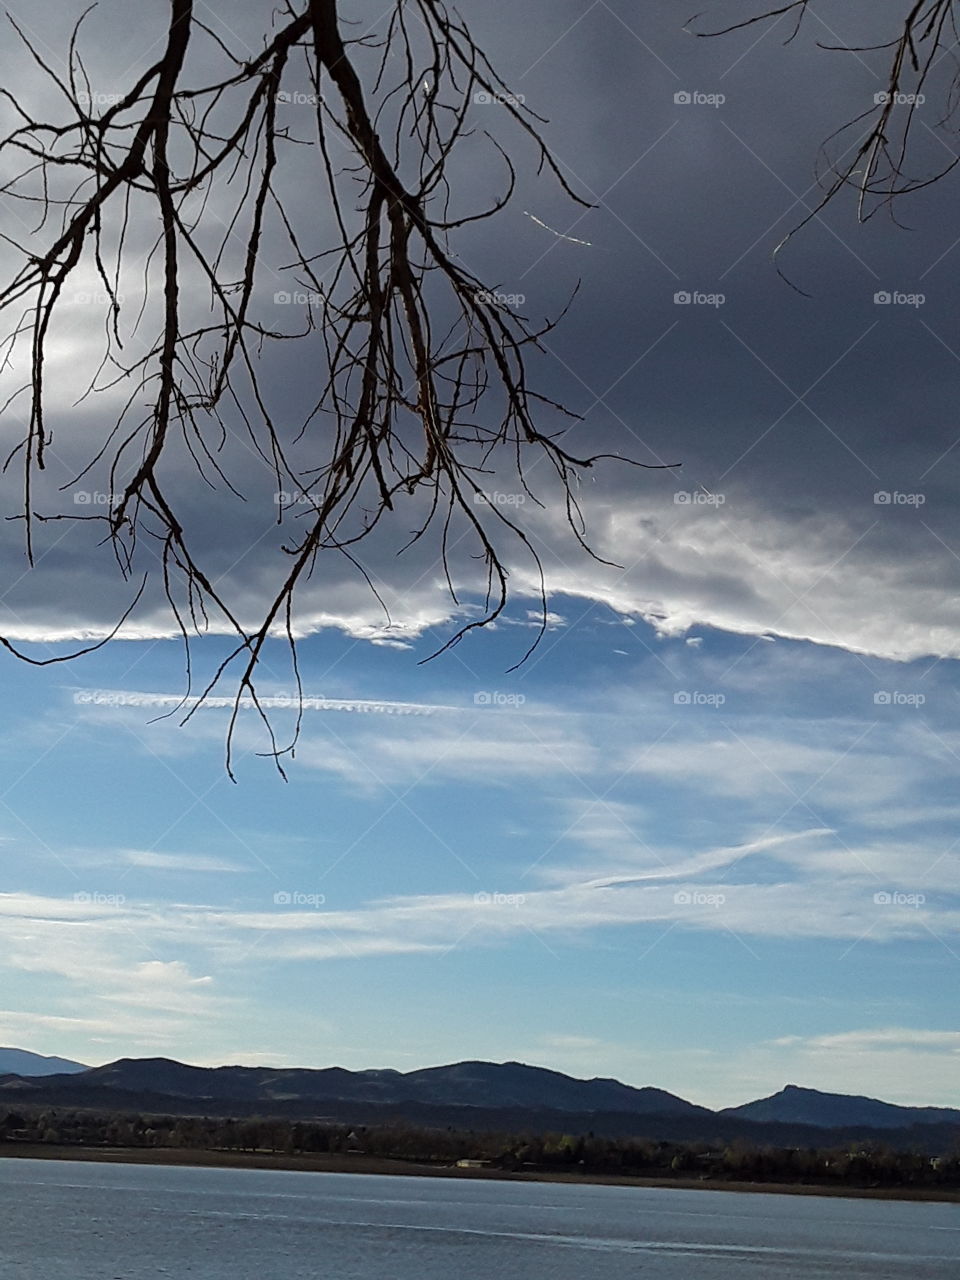 Loveland Colorado skies